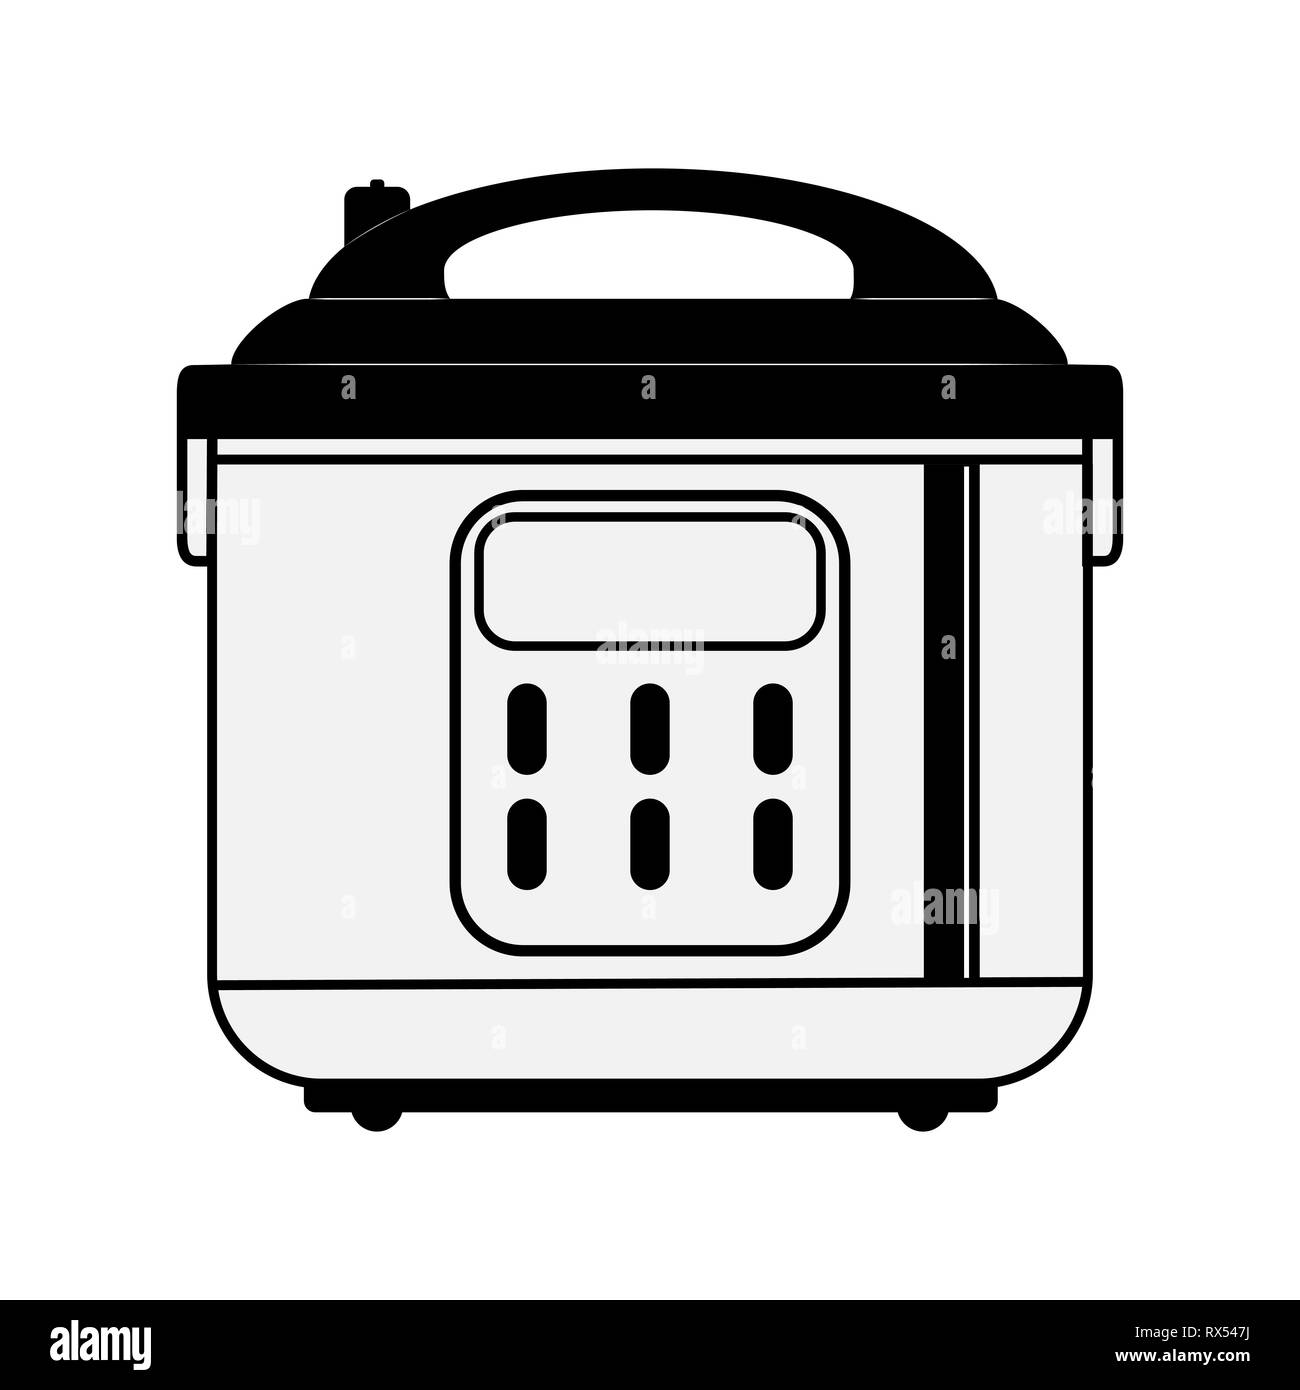 Les appareils de cuisine, la simple image de la cocotte pour la cuisson Illustration de Vecteur